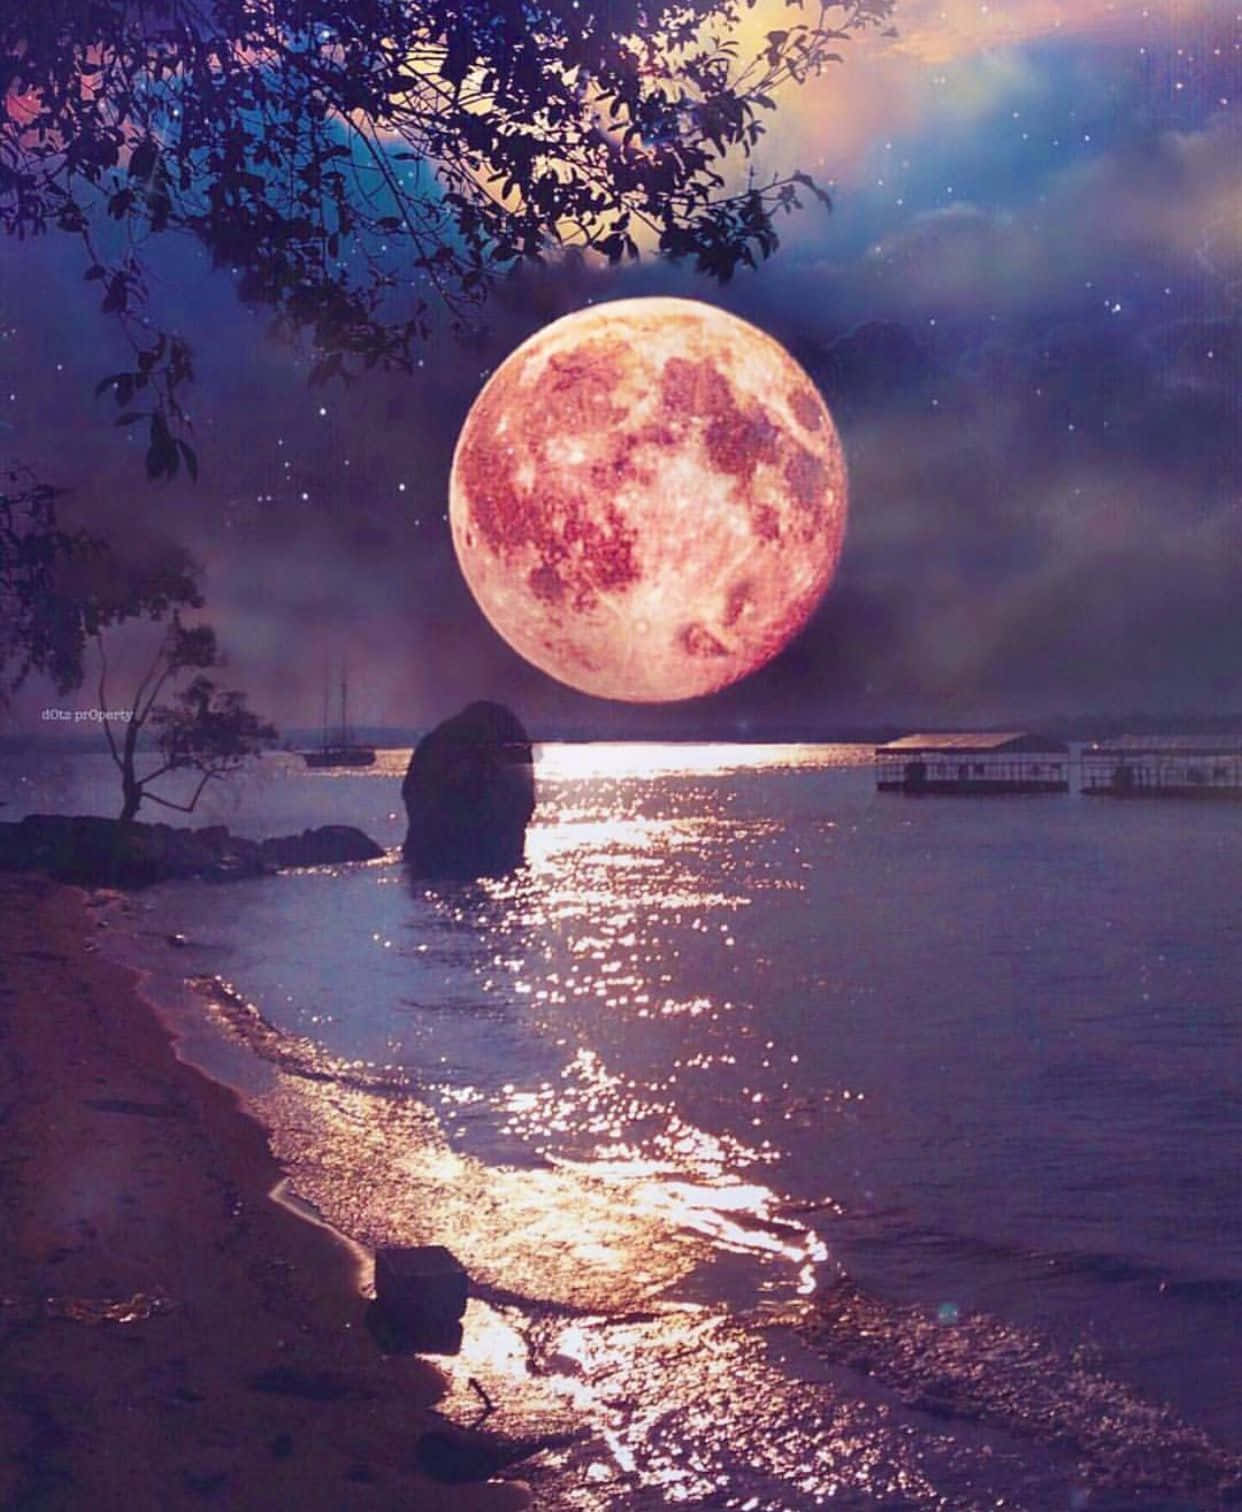 Einehimmlische Szene Mit Einem Wunderschönen Mond, Der Den Nachthimmel Erhellt